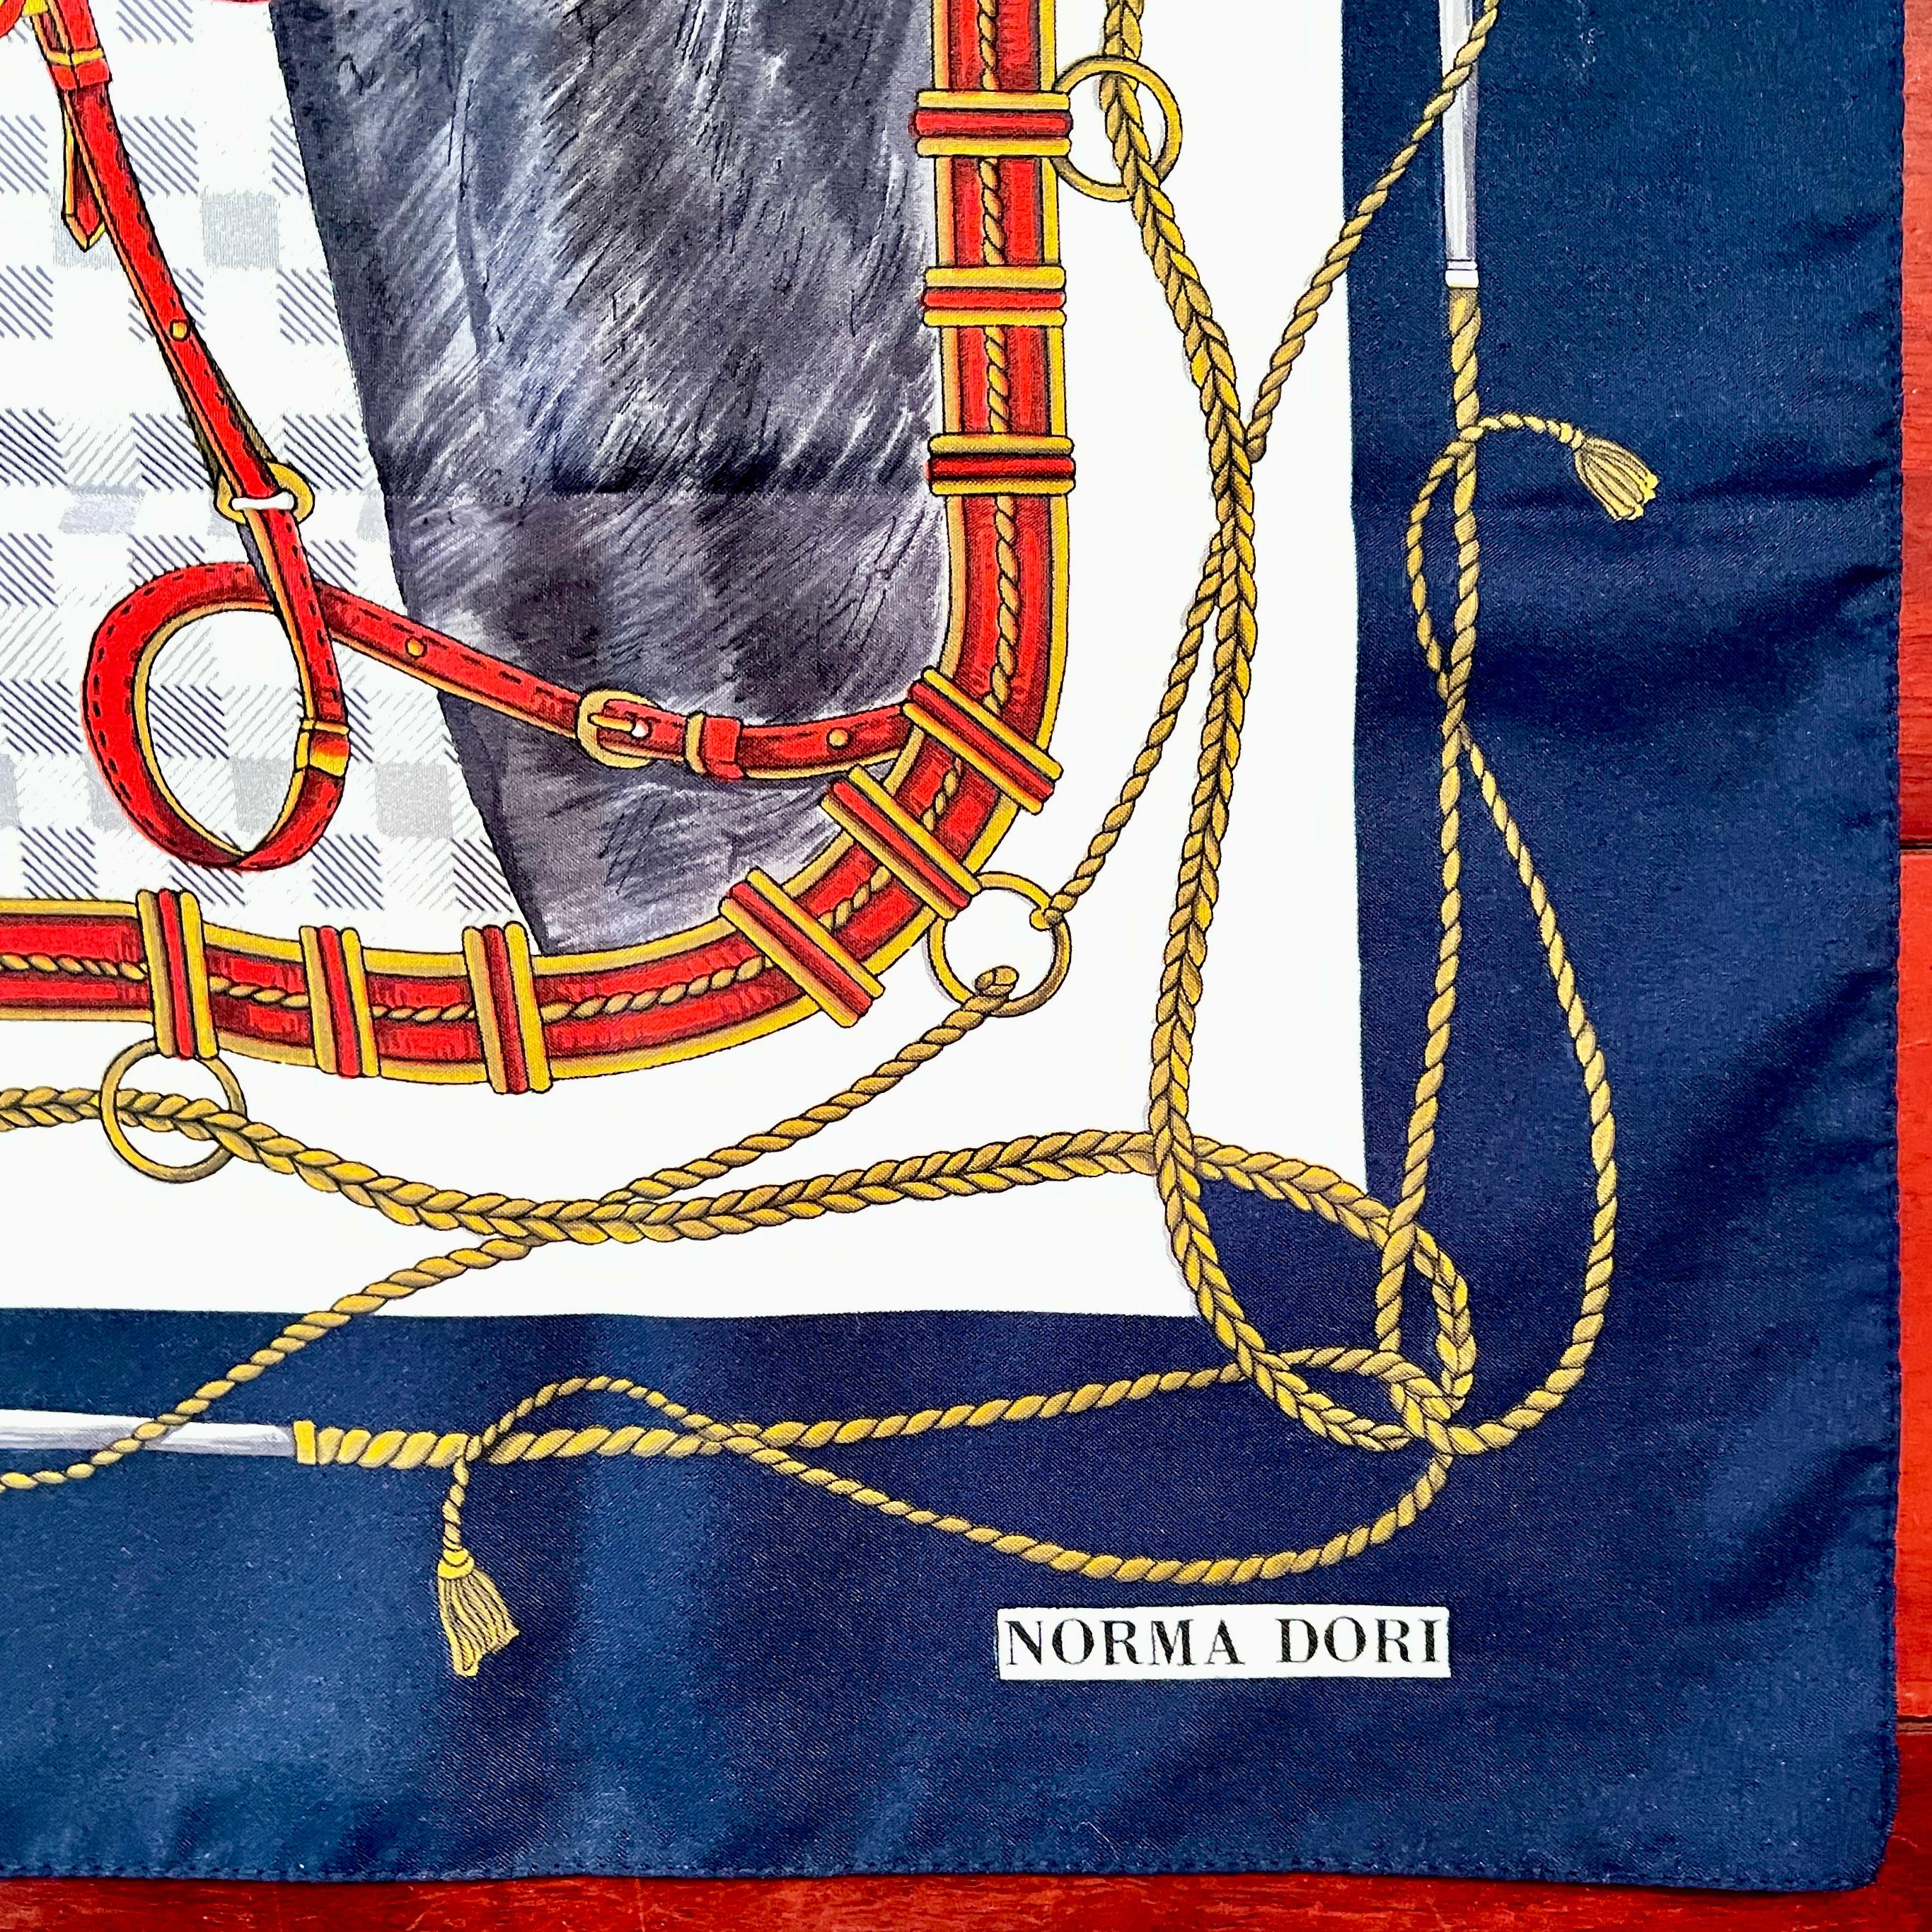 Un foulard vintage à thème équestre de la créatrice londonienne Norma Dori, vers la fin du 20e siècle.

Représentant la tête d'un cheval noir portant une bride rouge. L'arrière-plan présente des motifs équestres, notamment un fer à cheval, des rênes